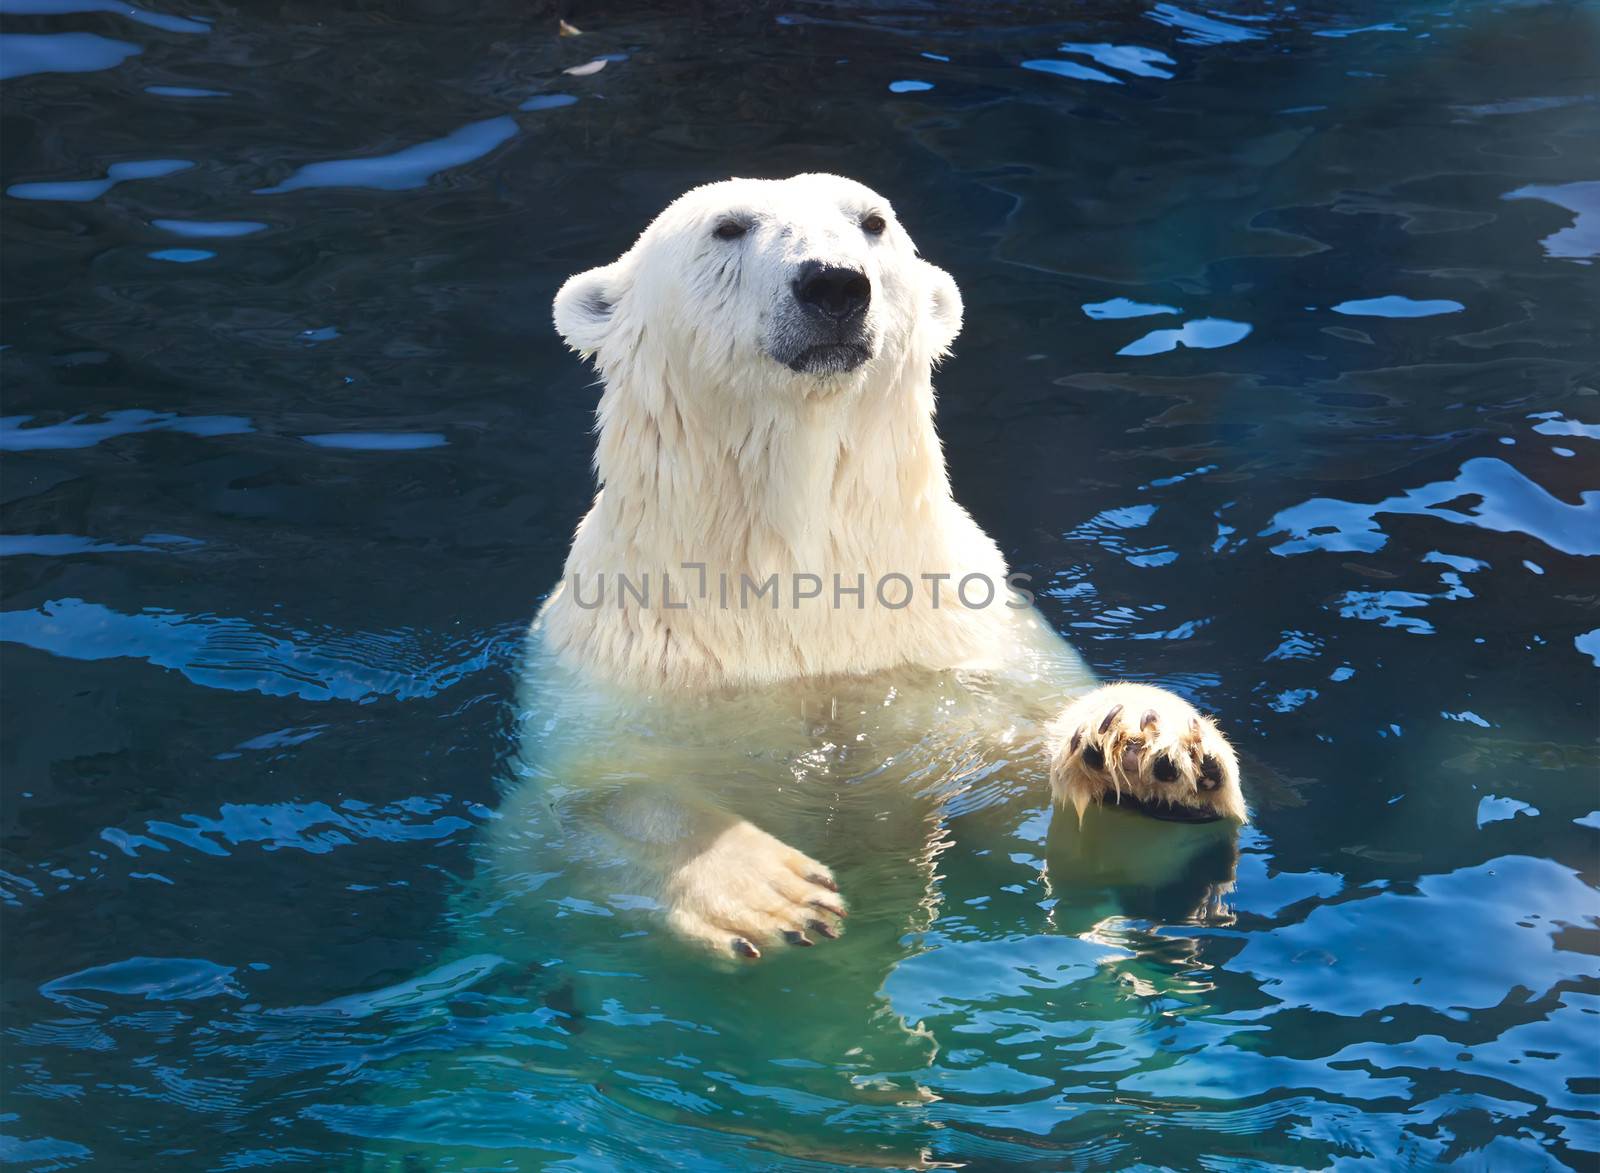 Polar bear by sailorr